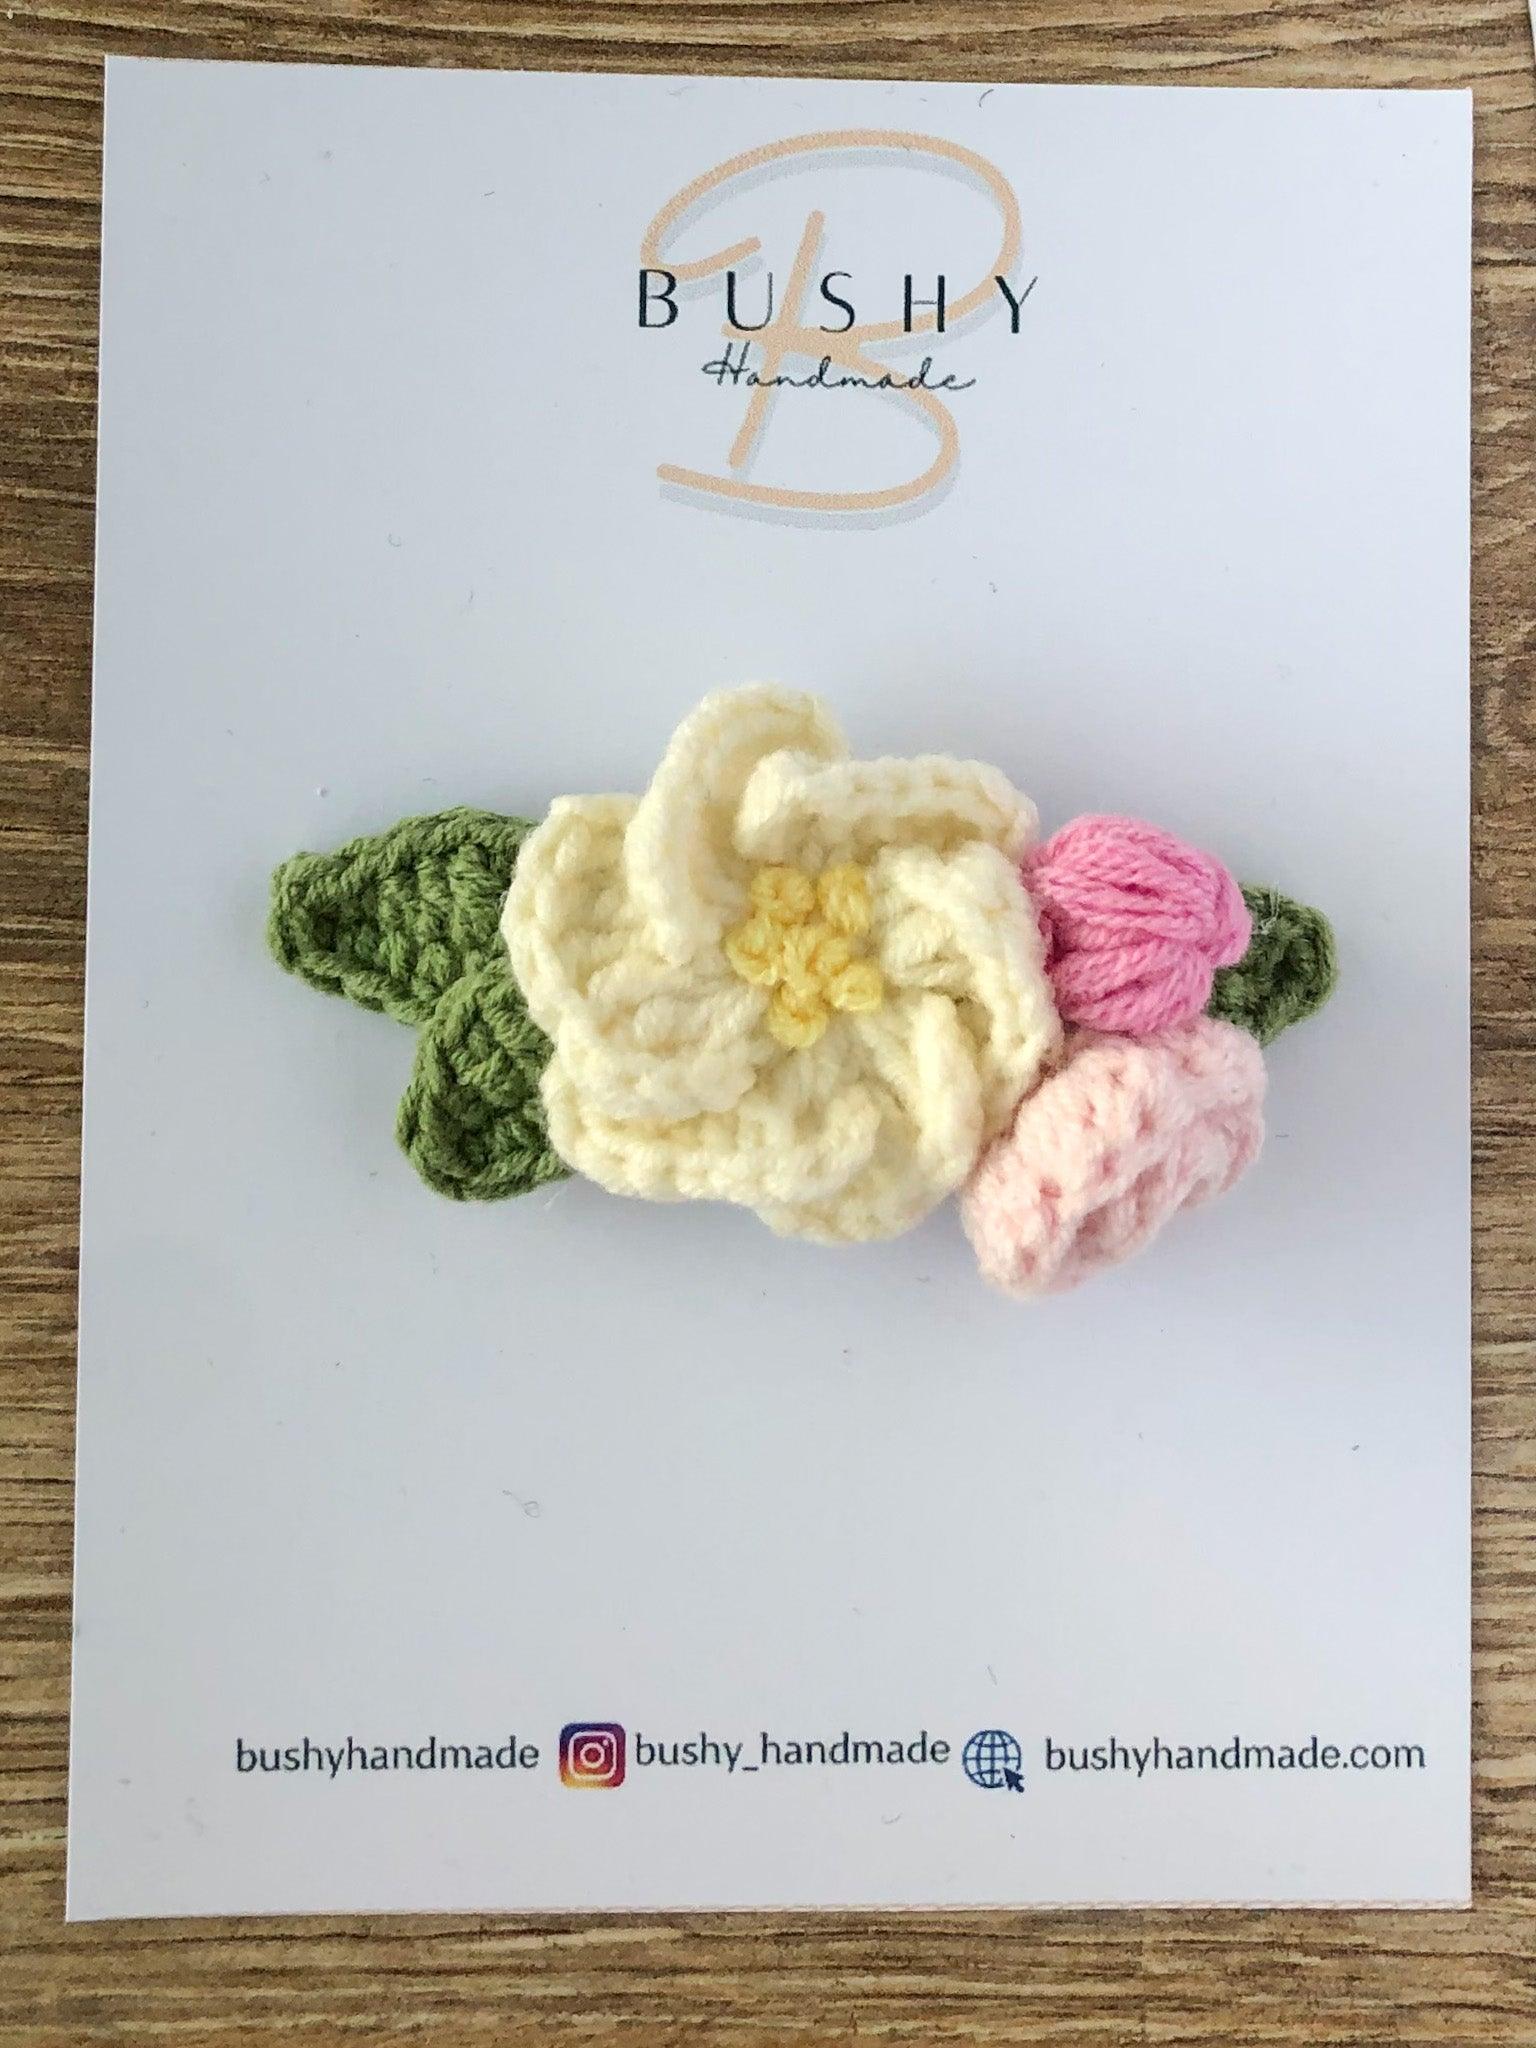 Пъстри Фибички - Bushy Handmade